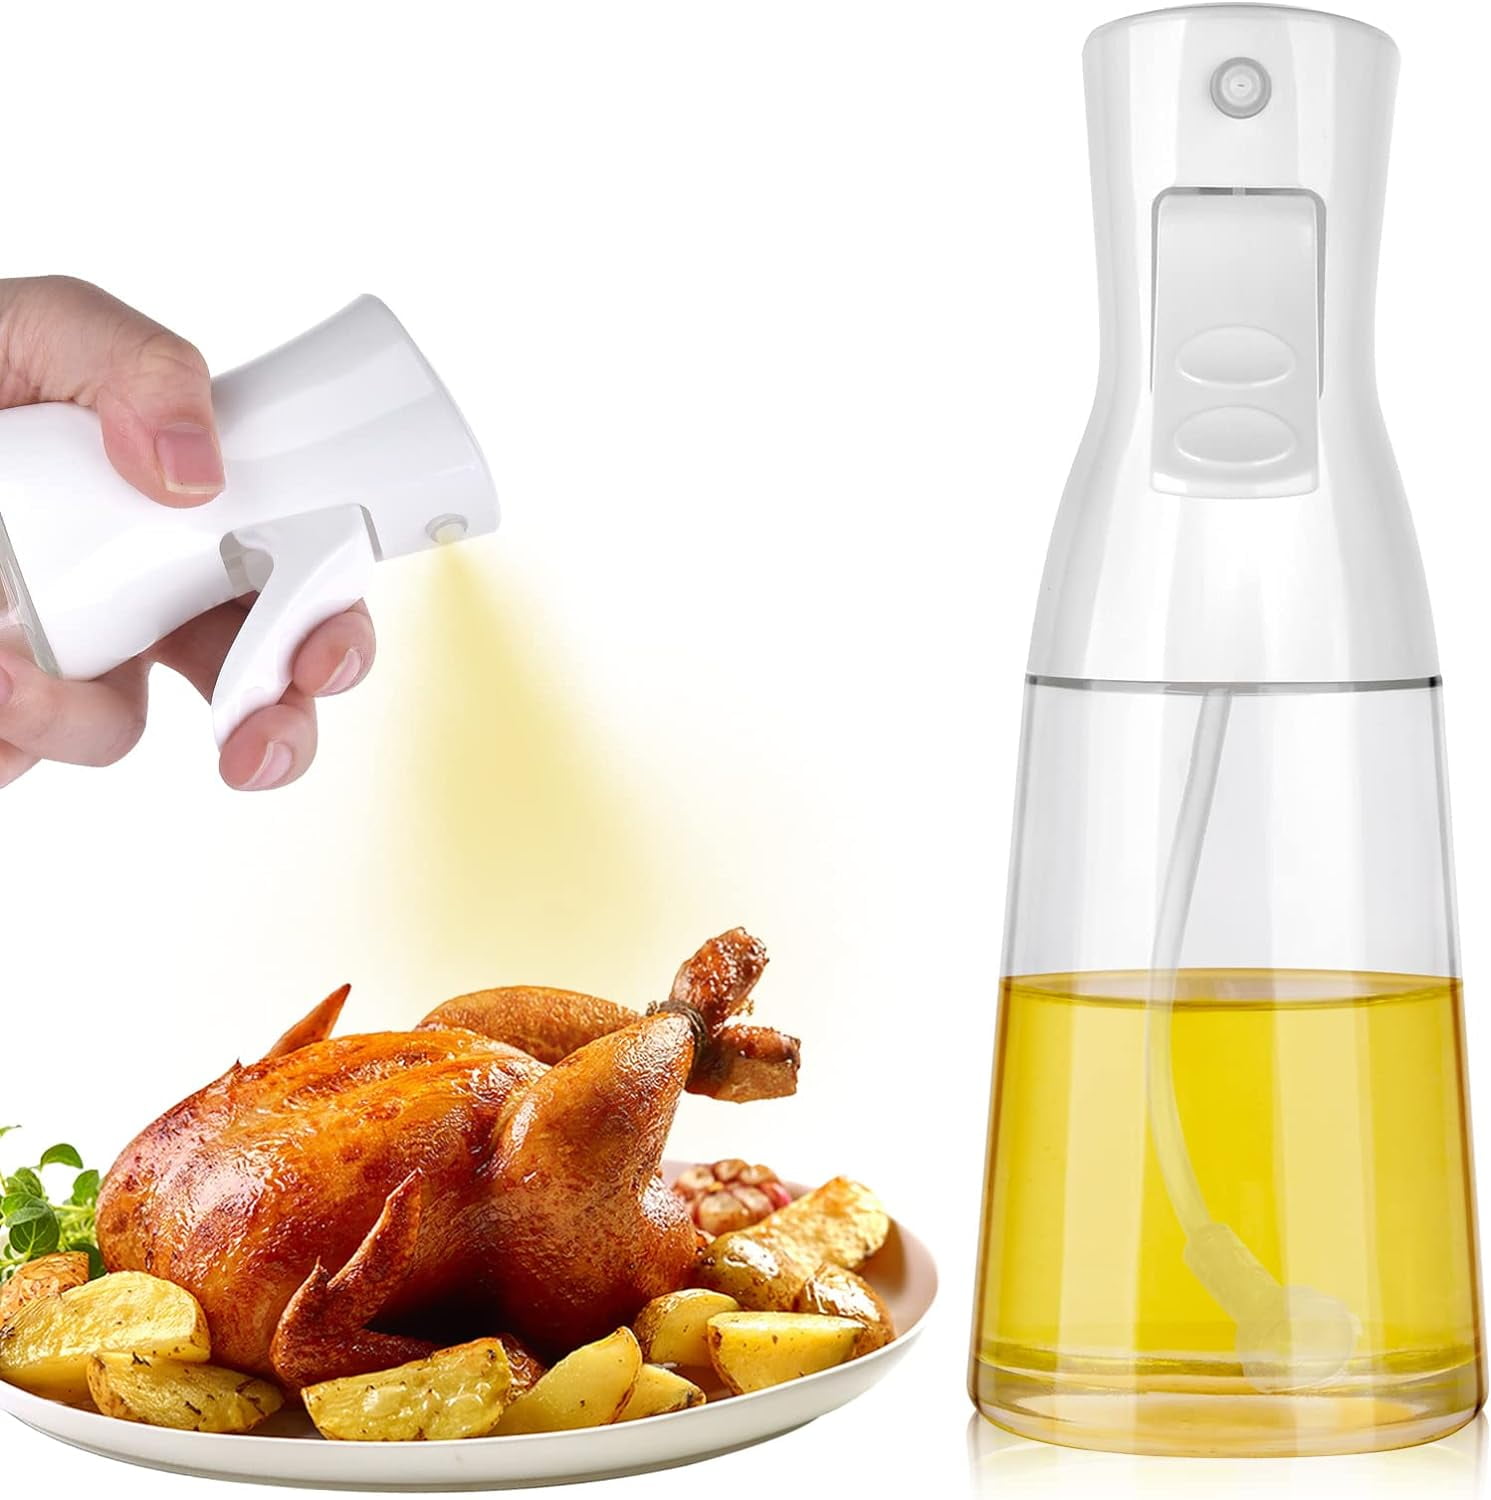 ATB-GIFT Glass Oil spray bottle, 7oz(200ML) olive oil sprayer for cooking,  Oil dispenser bottle for kitchen, Sprayer Mister for Salad, BBQ, Kitchen